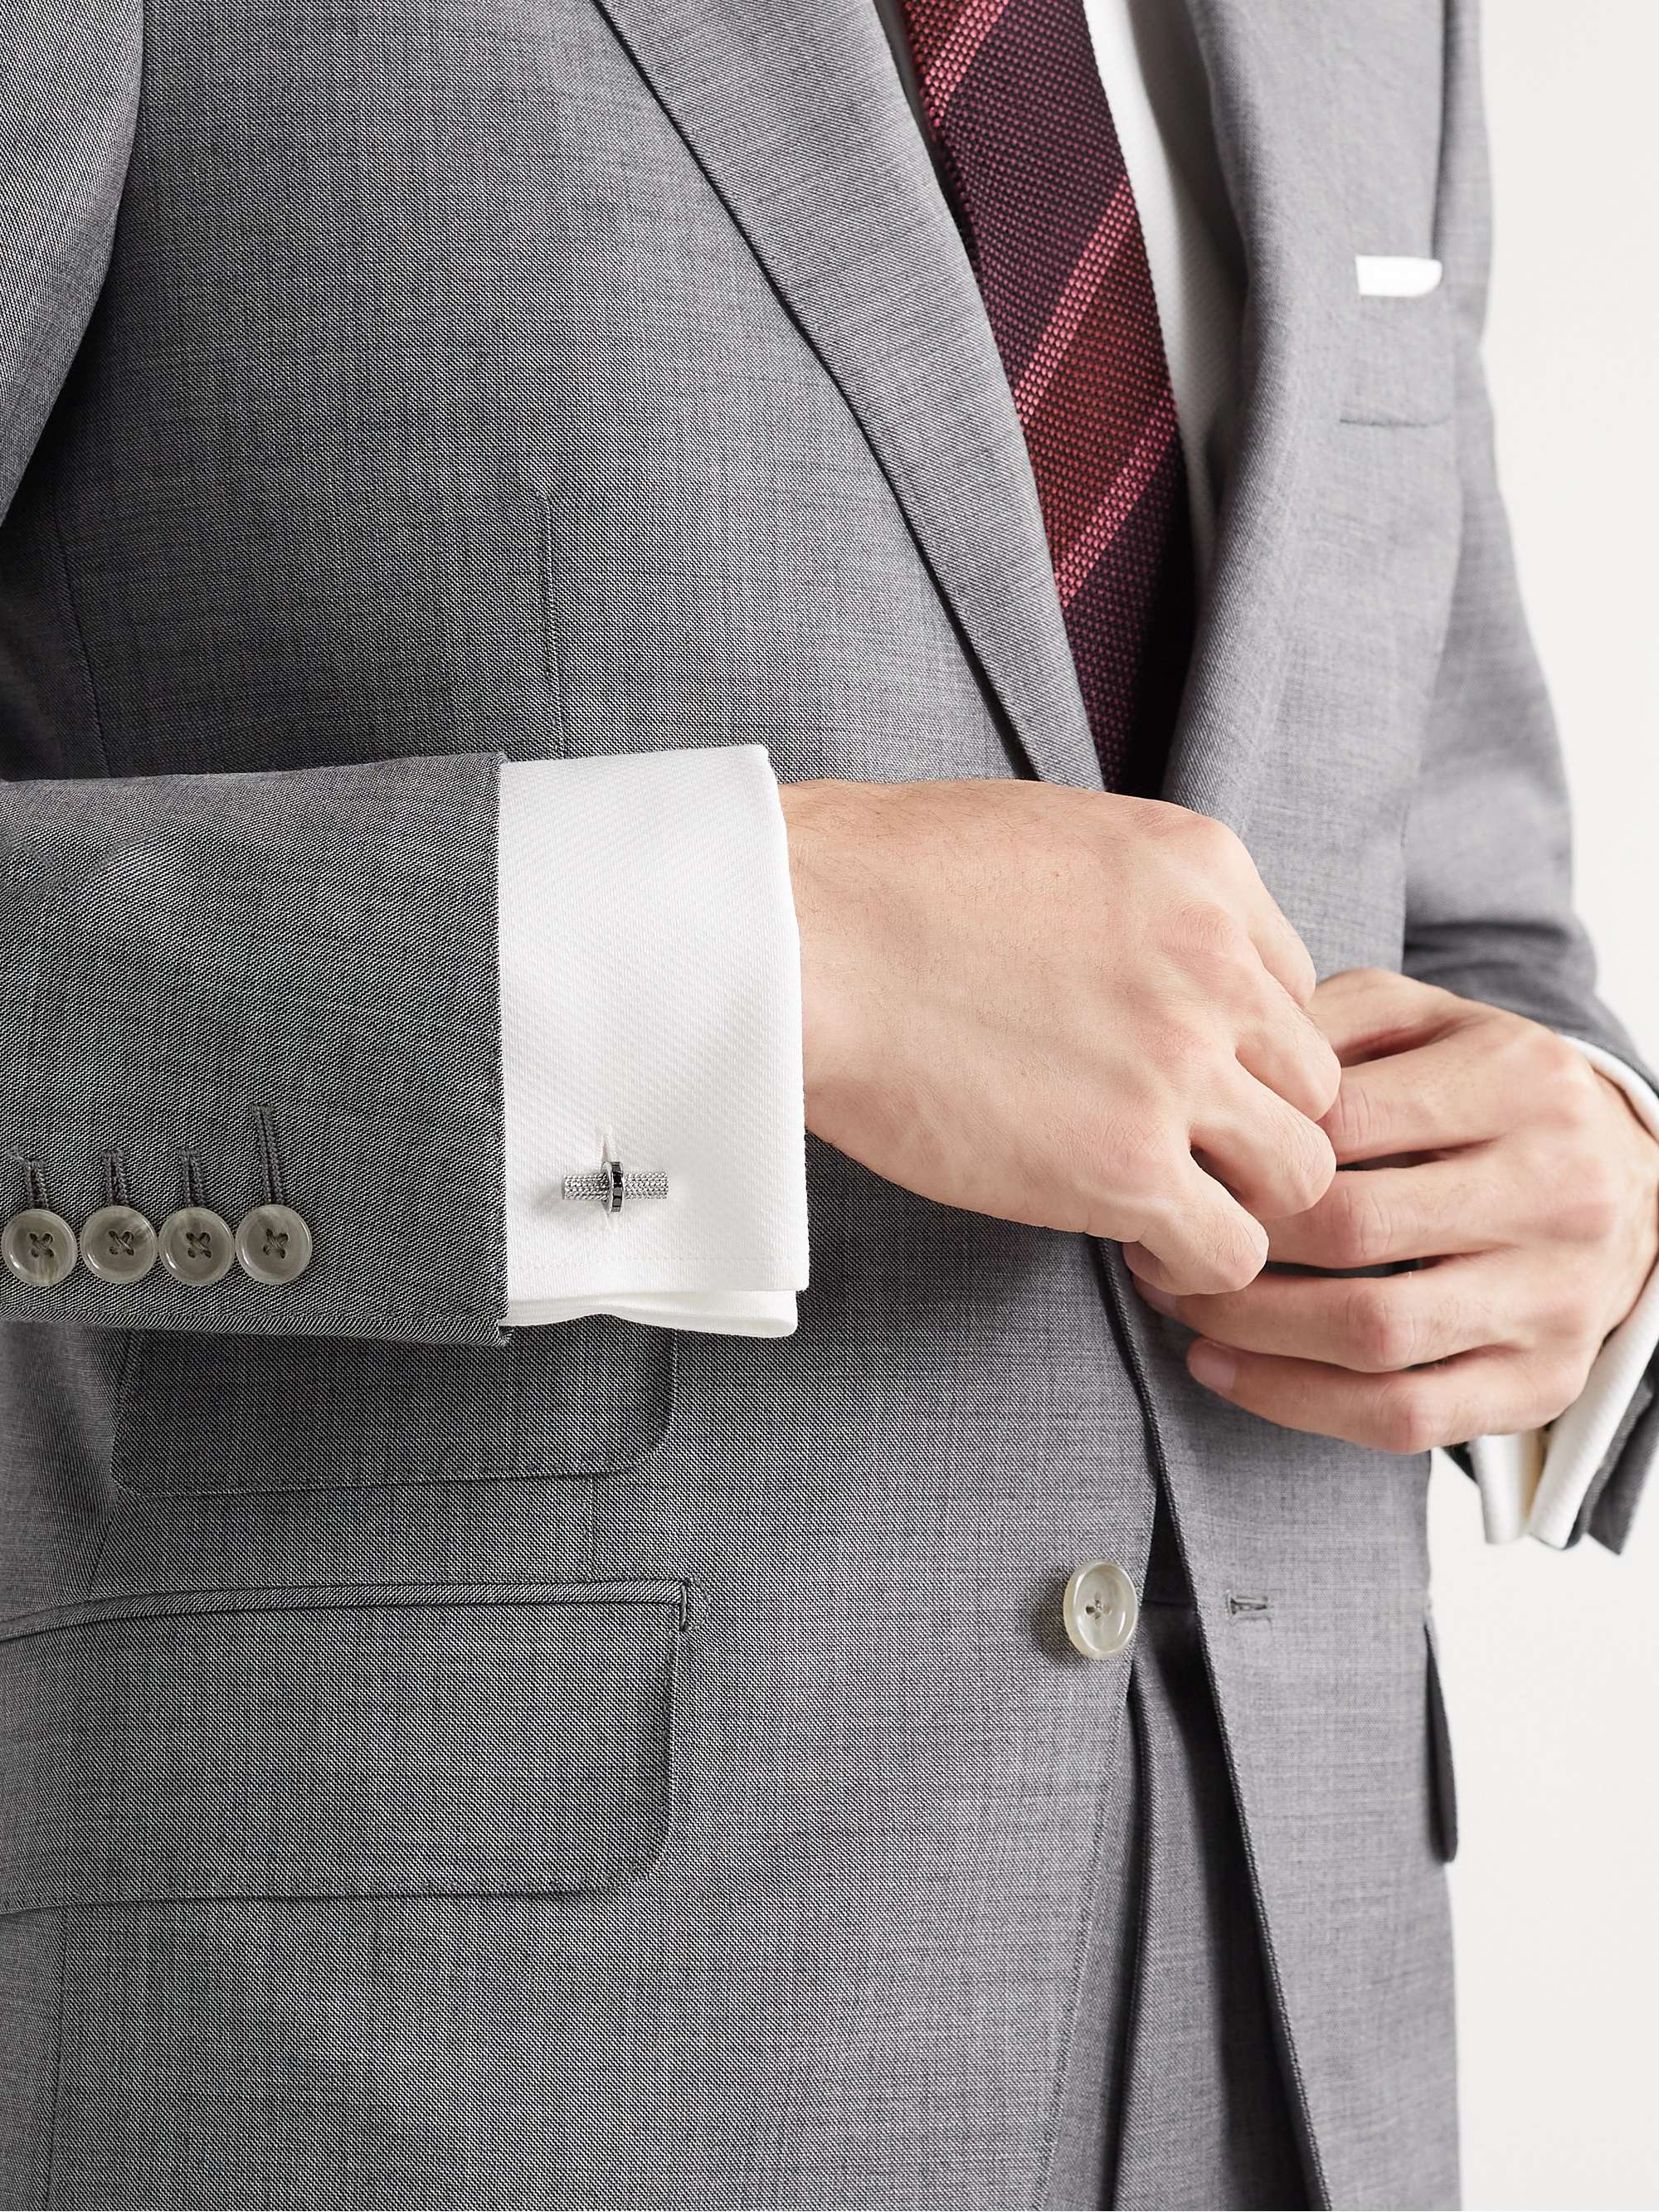 TOM FORD 18-Karat White Gold Diamond Cufflinks for Men | MR PORTER